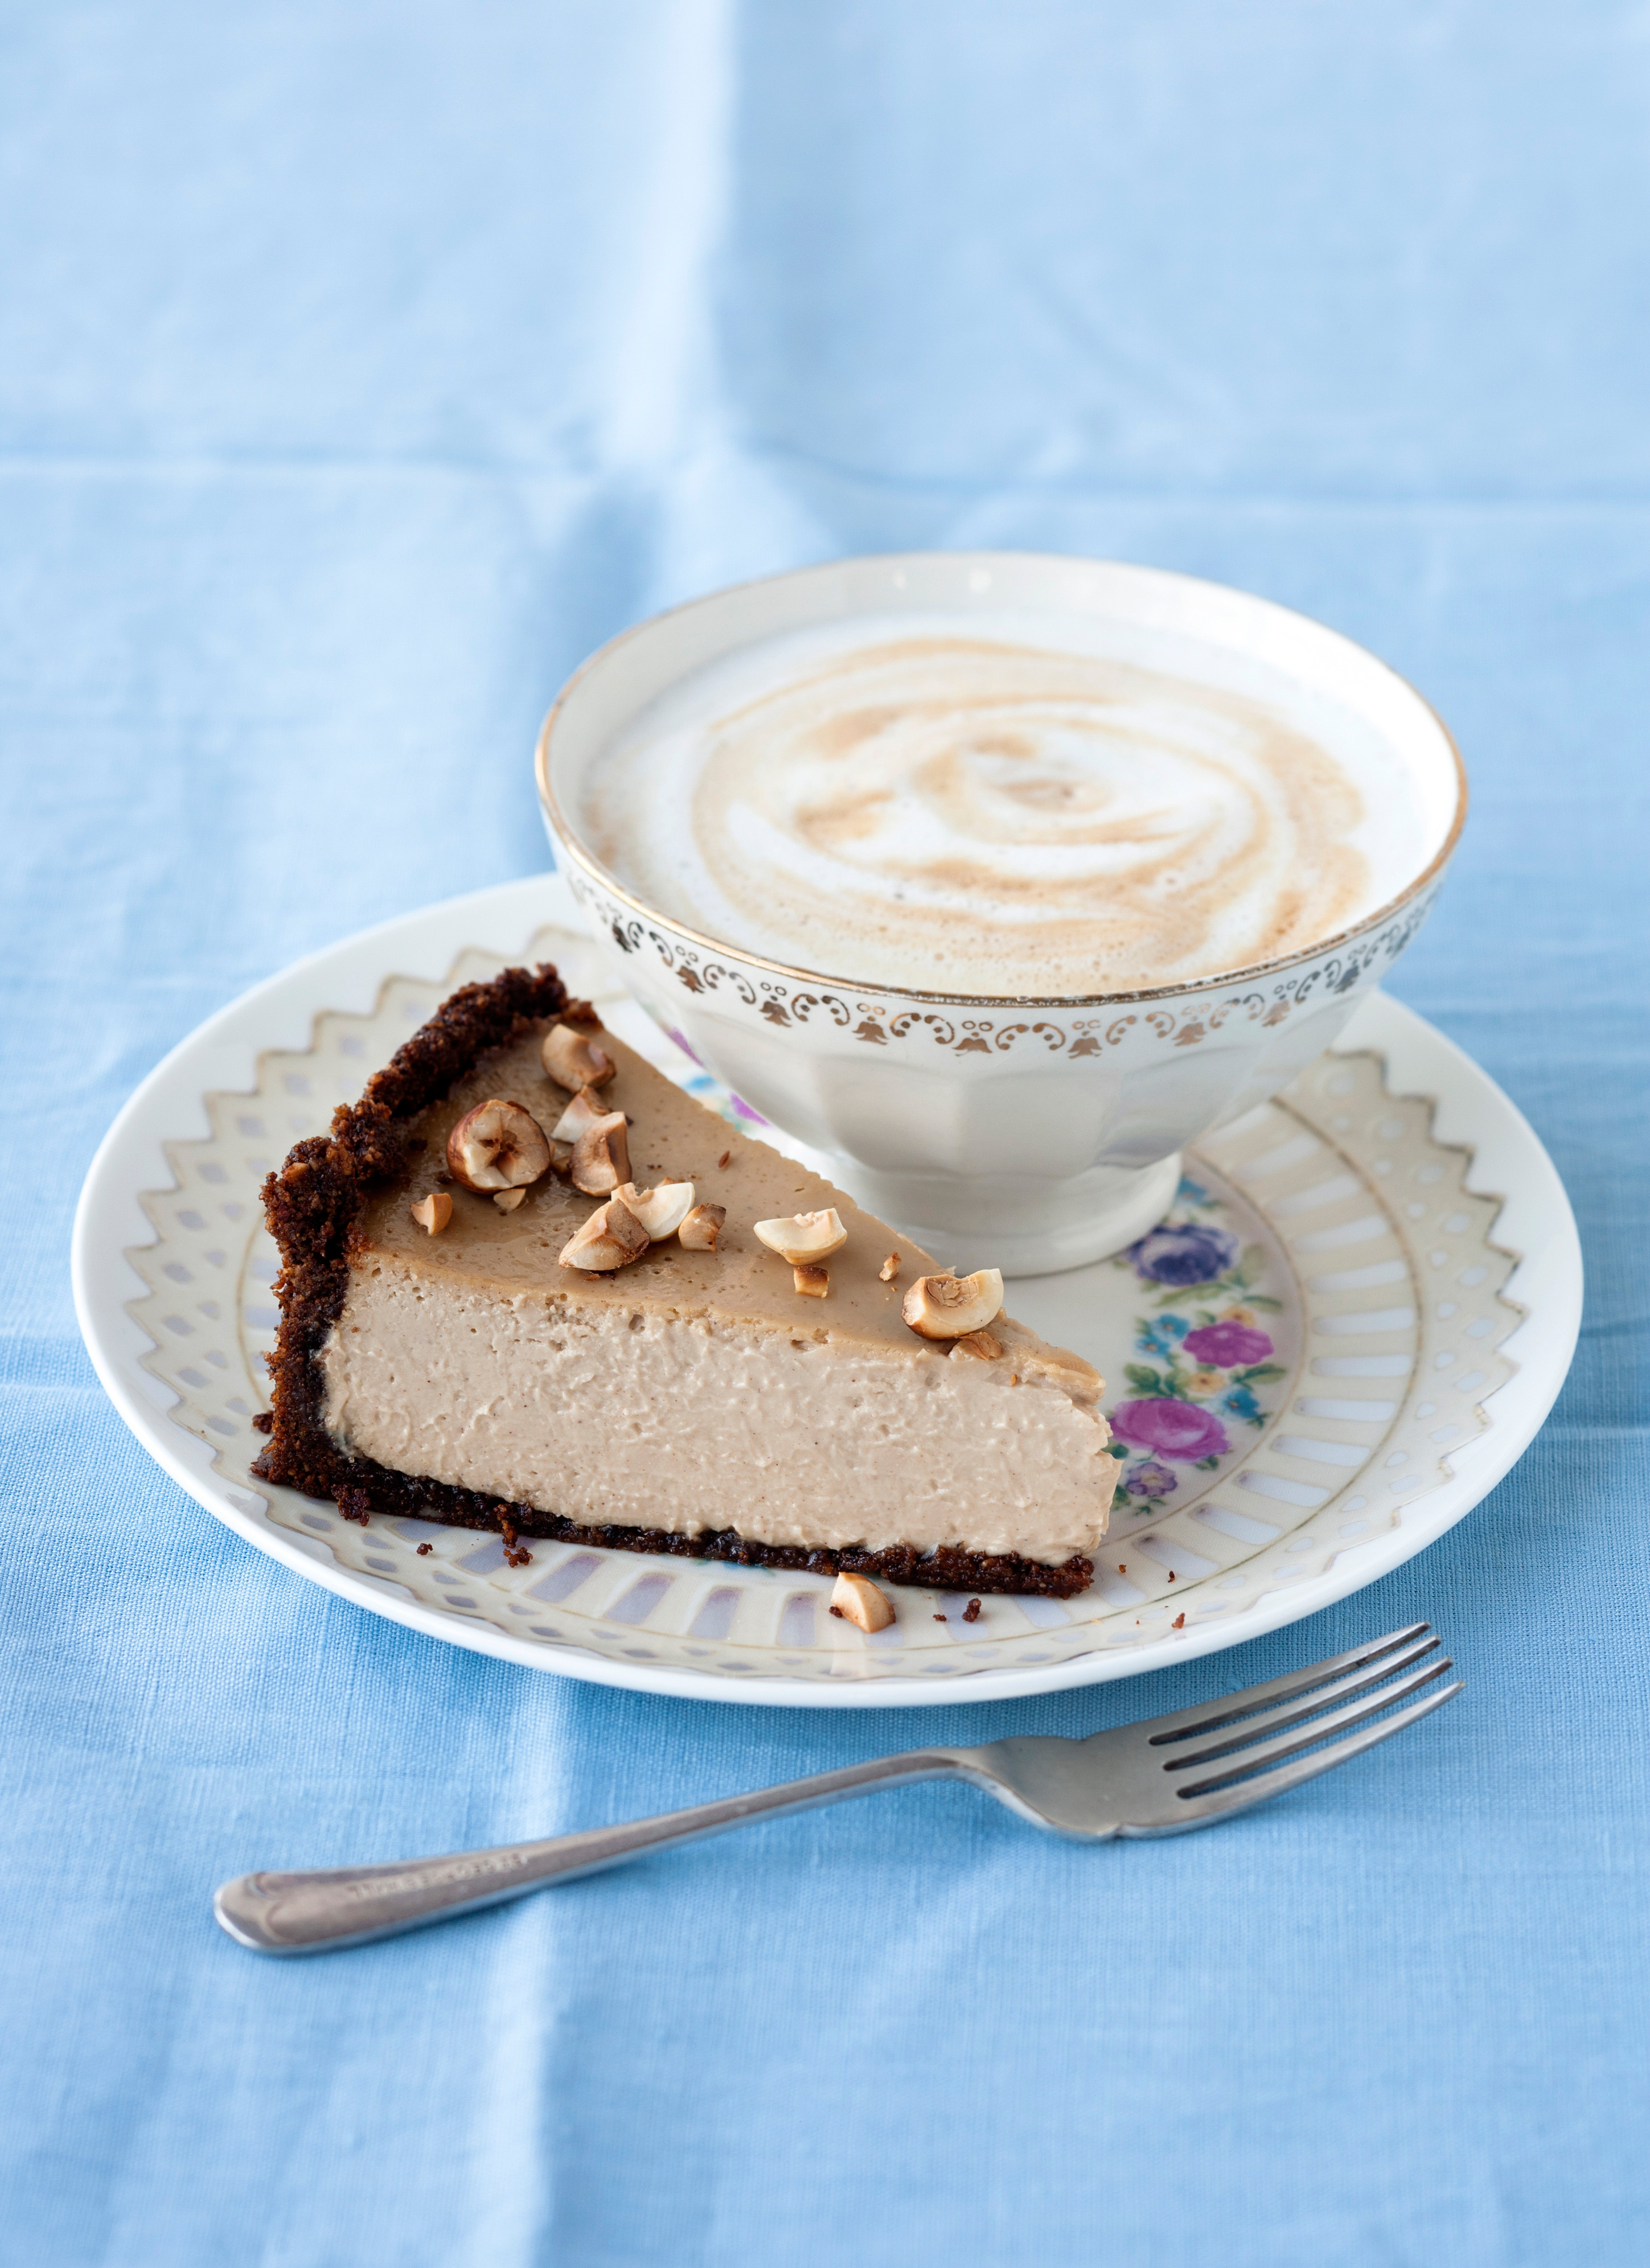 Una variante novedosa y riquísima para la tarta de requesón: un relleno de ricota, café y avellanas.